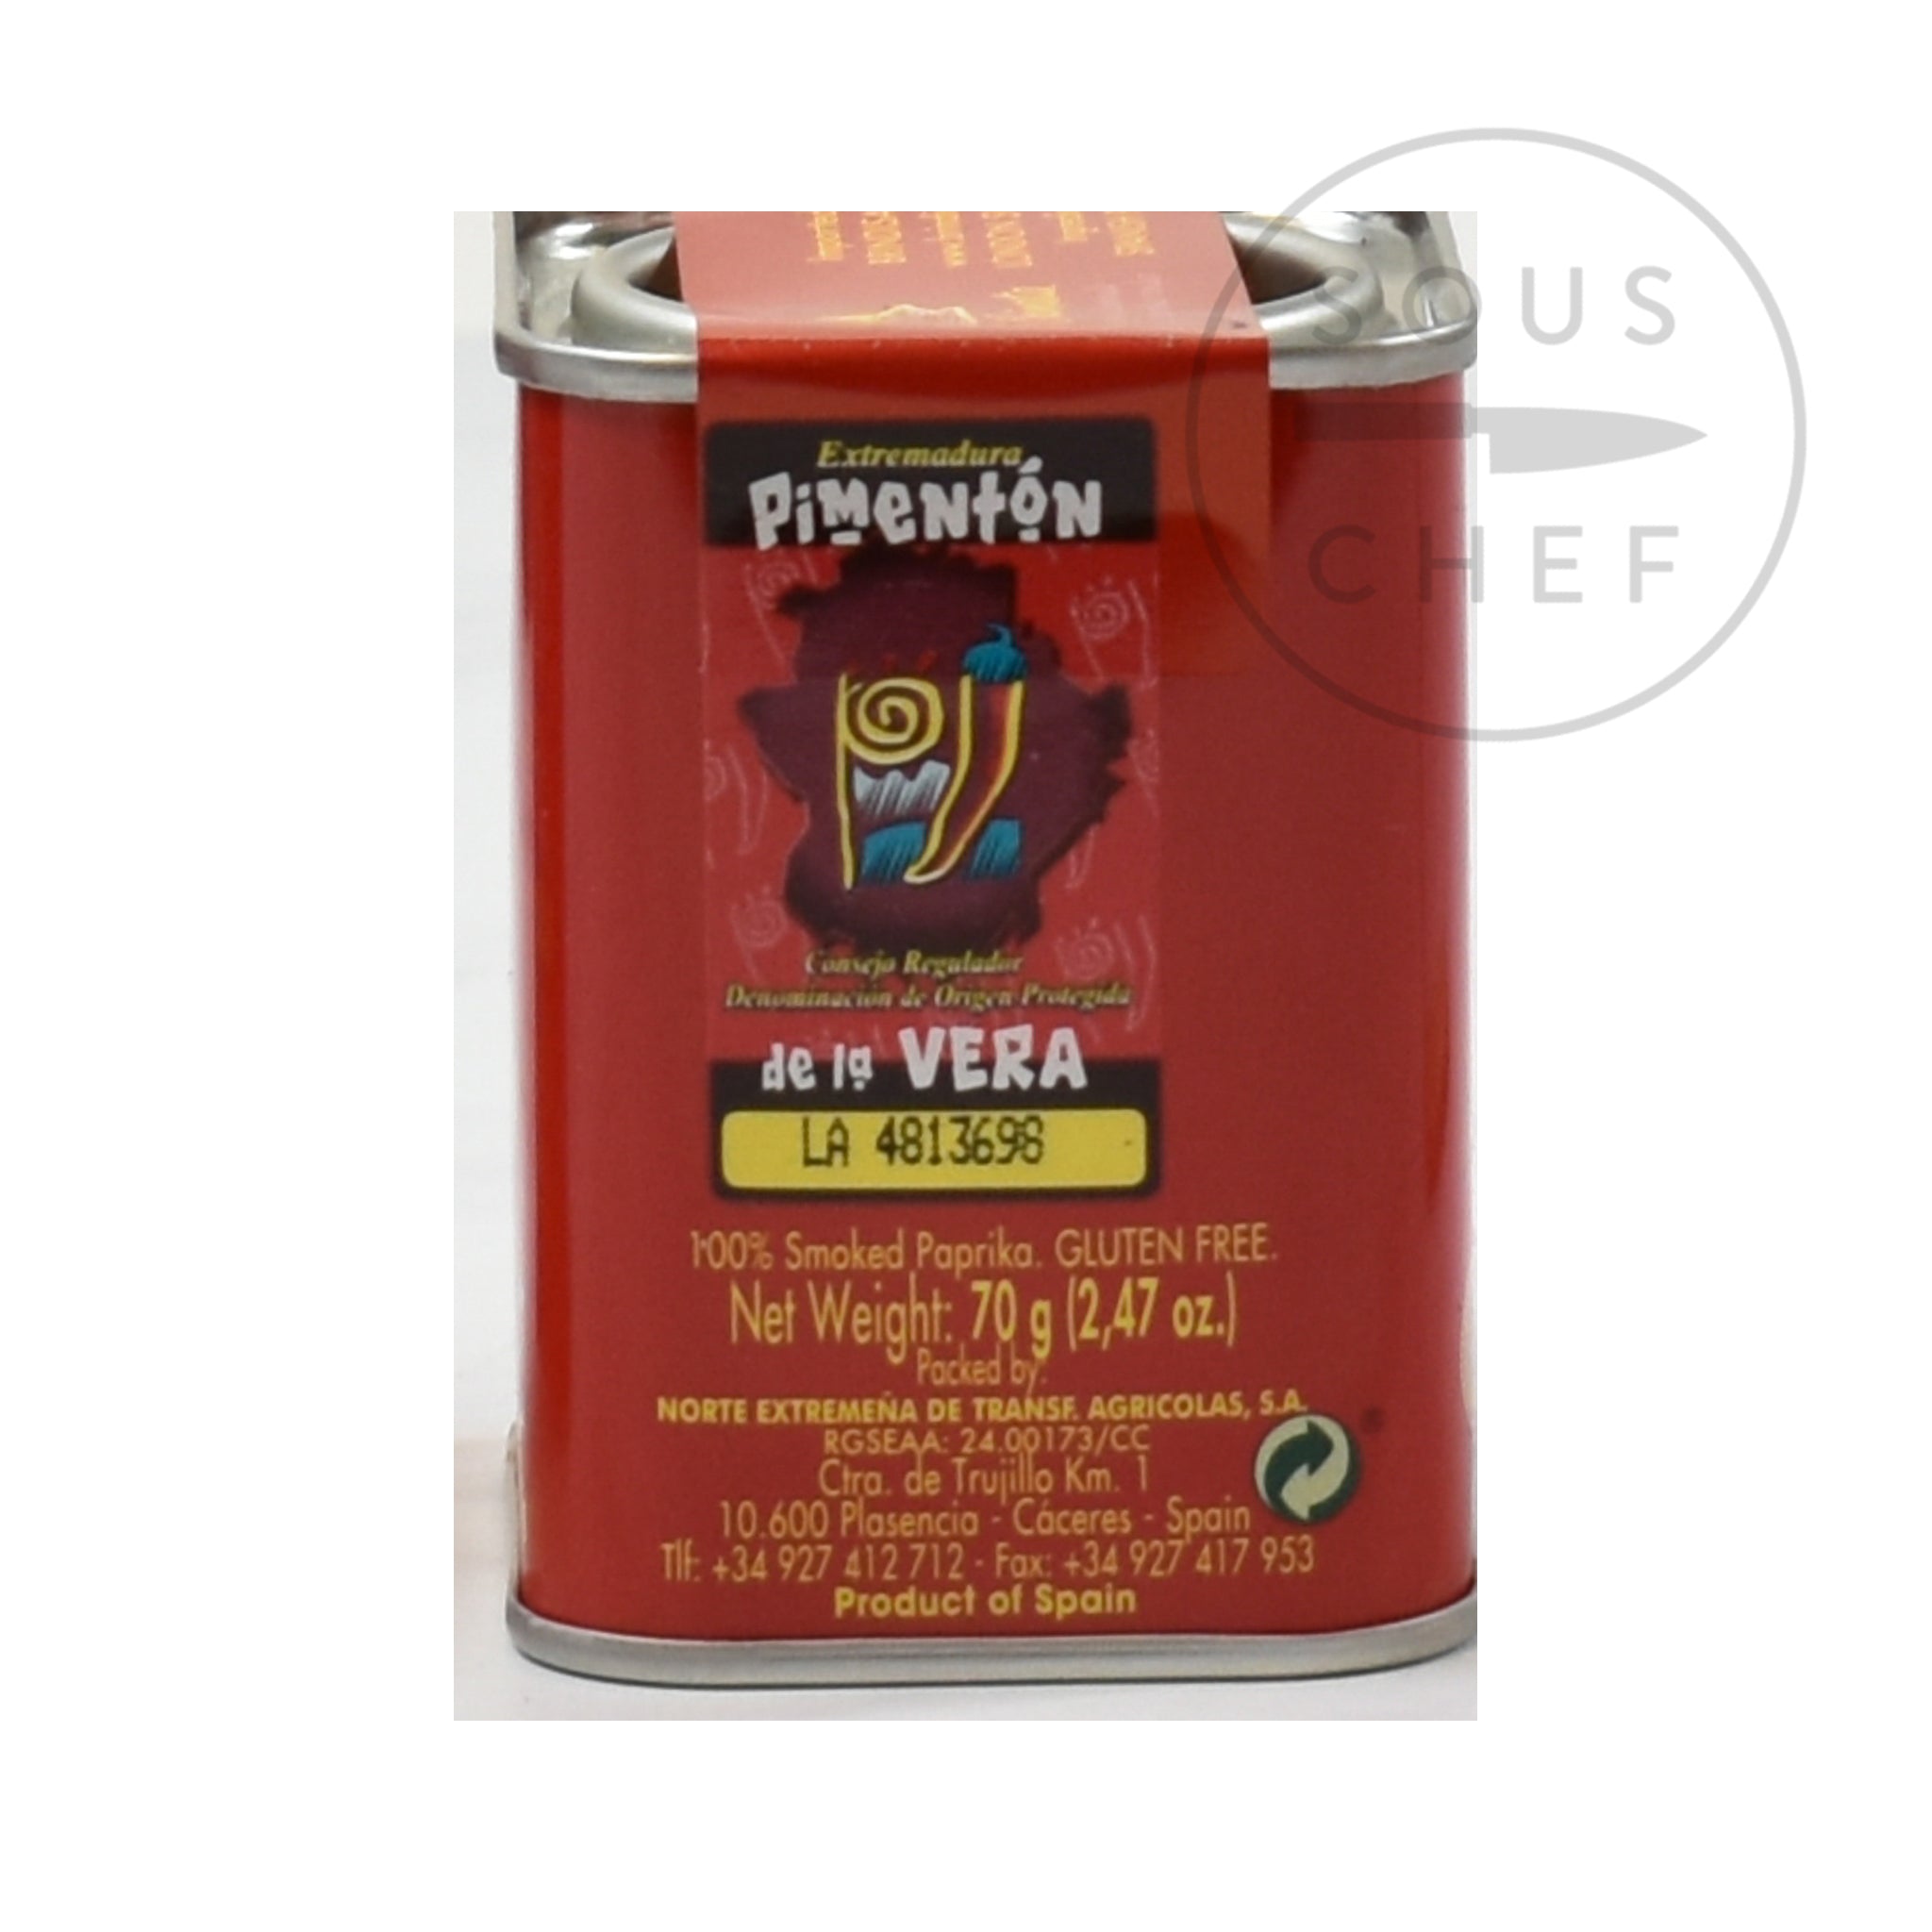 La Chinata Sweet Smoked Paprika 70g Ingredients Seasonings Spanish Food Ingredients Information